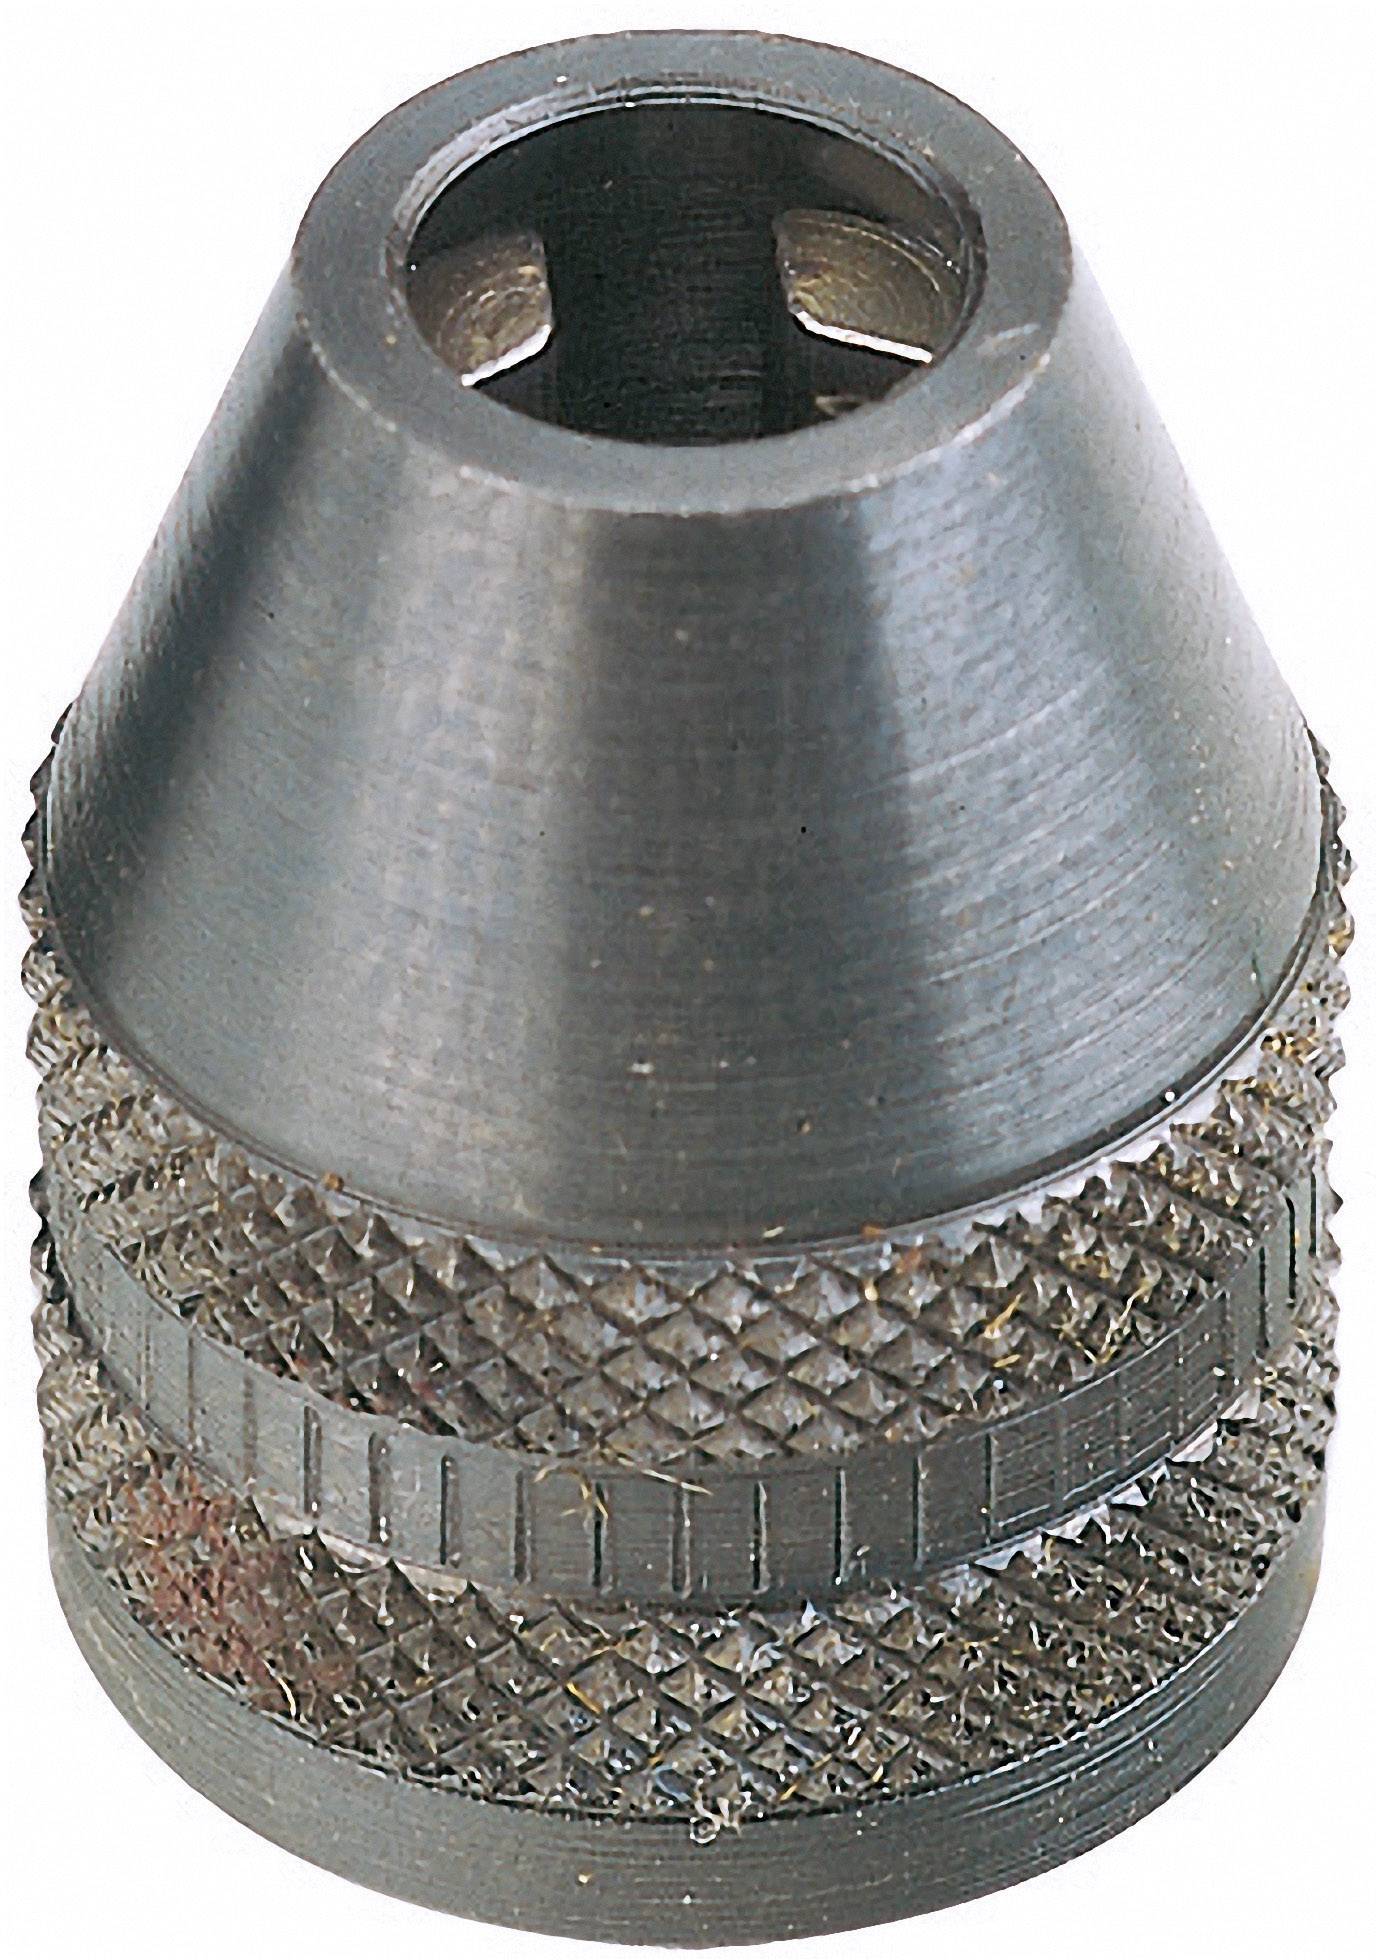 Three-jaw steel drill chuck Proxxon 28941 Mandrin